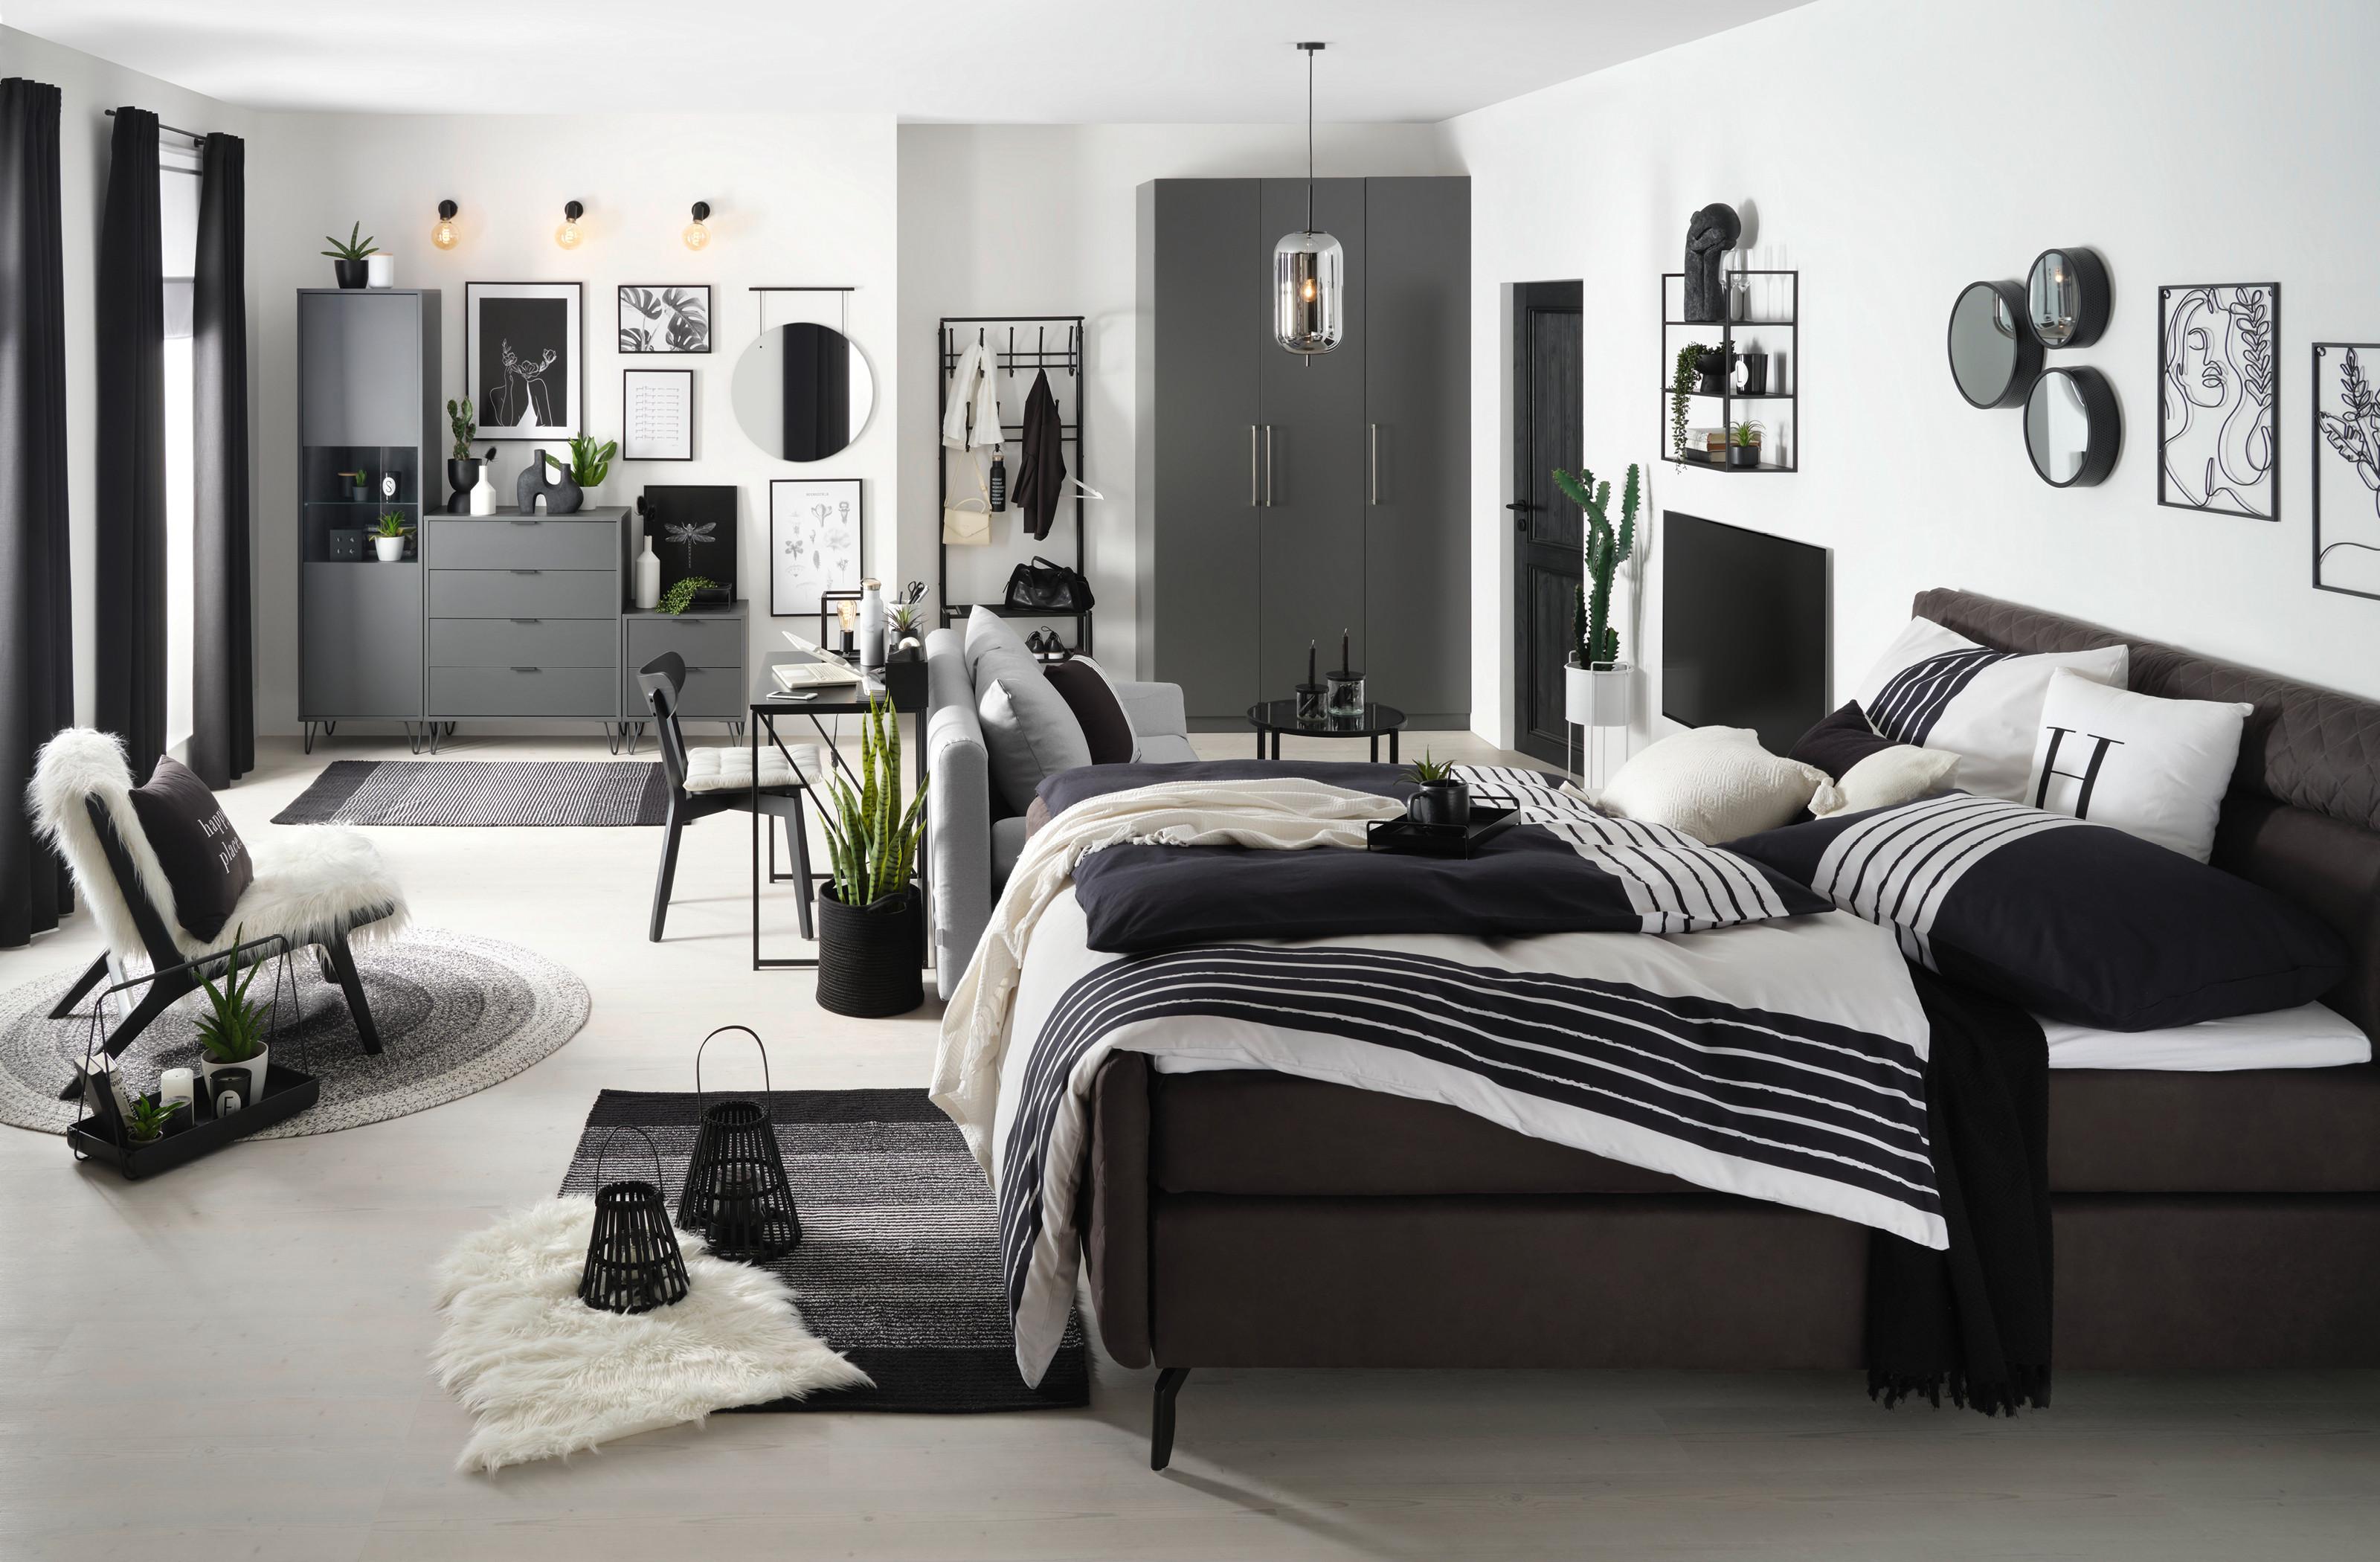 ložnice zařízená v kontrastní bílé a černé barvě